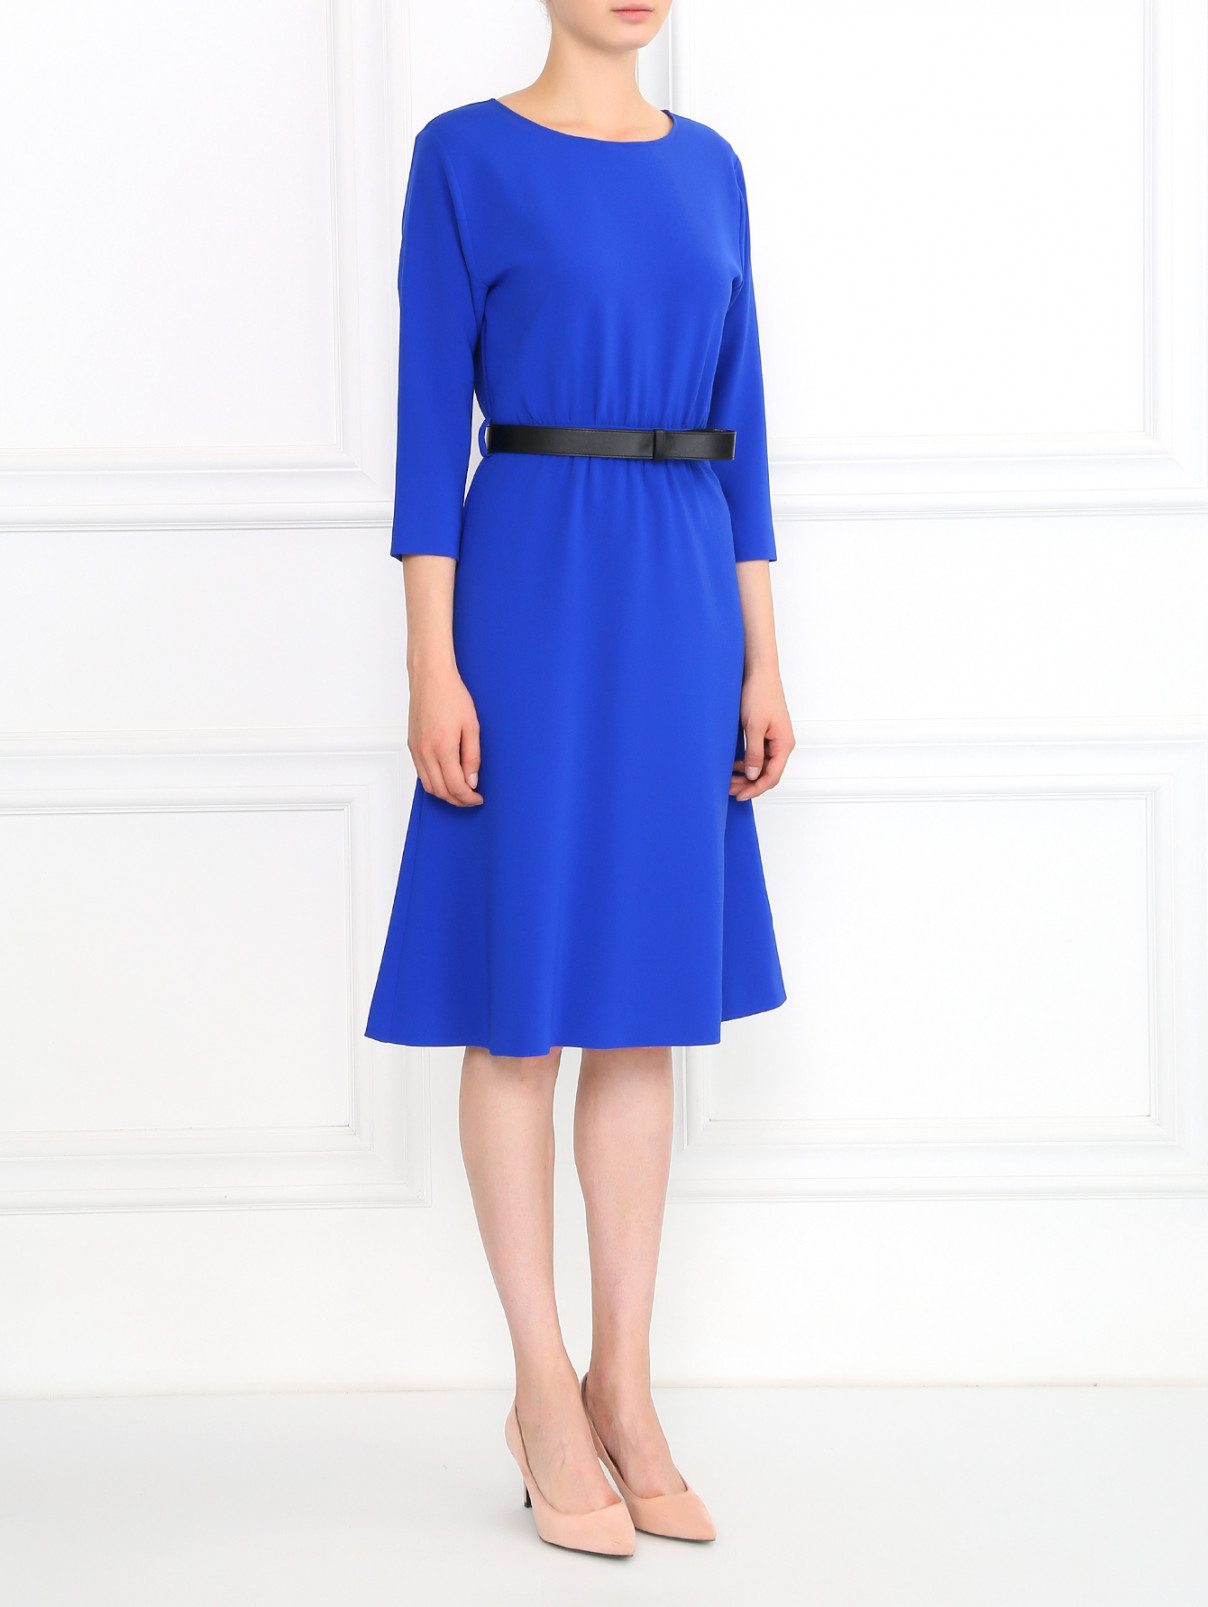 Платье-миди с рукавом 3/4 Moschino Boutique  –  Модель Общий вид  – Цвет:  Синий